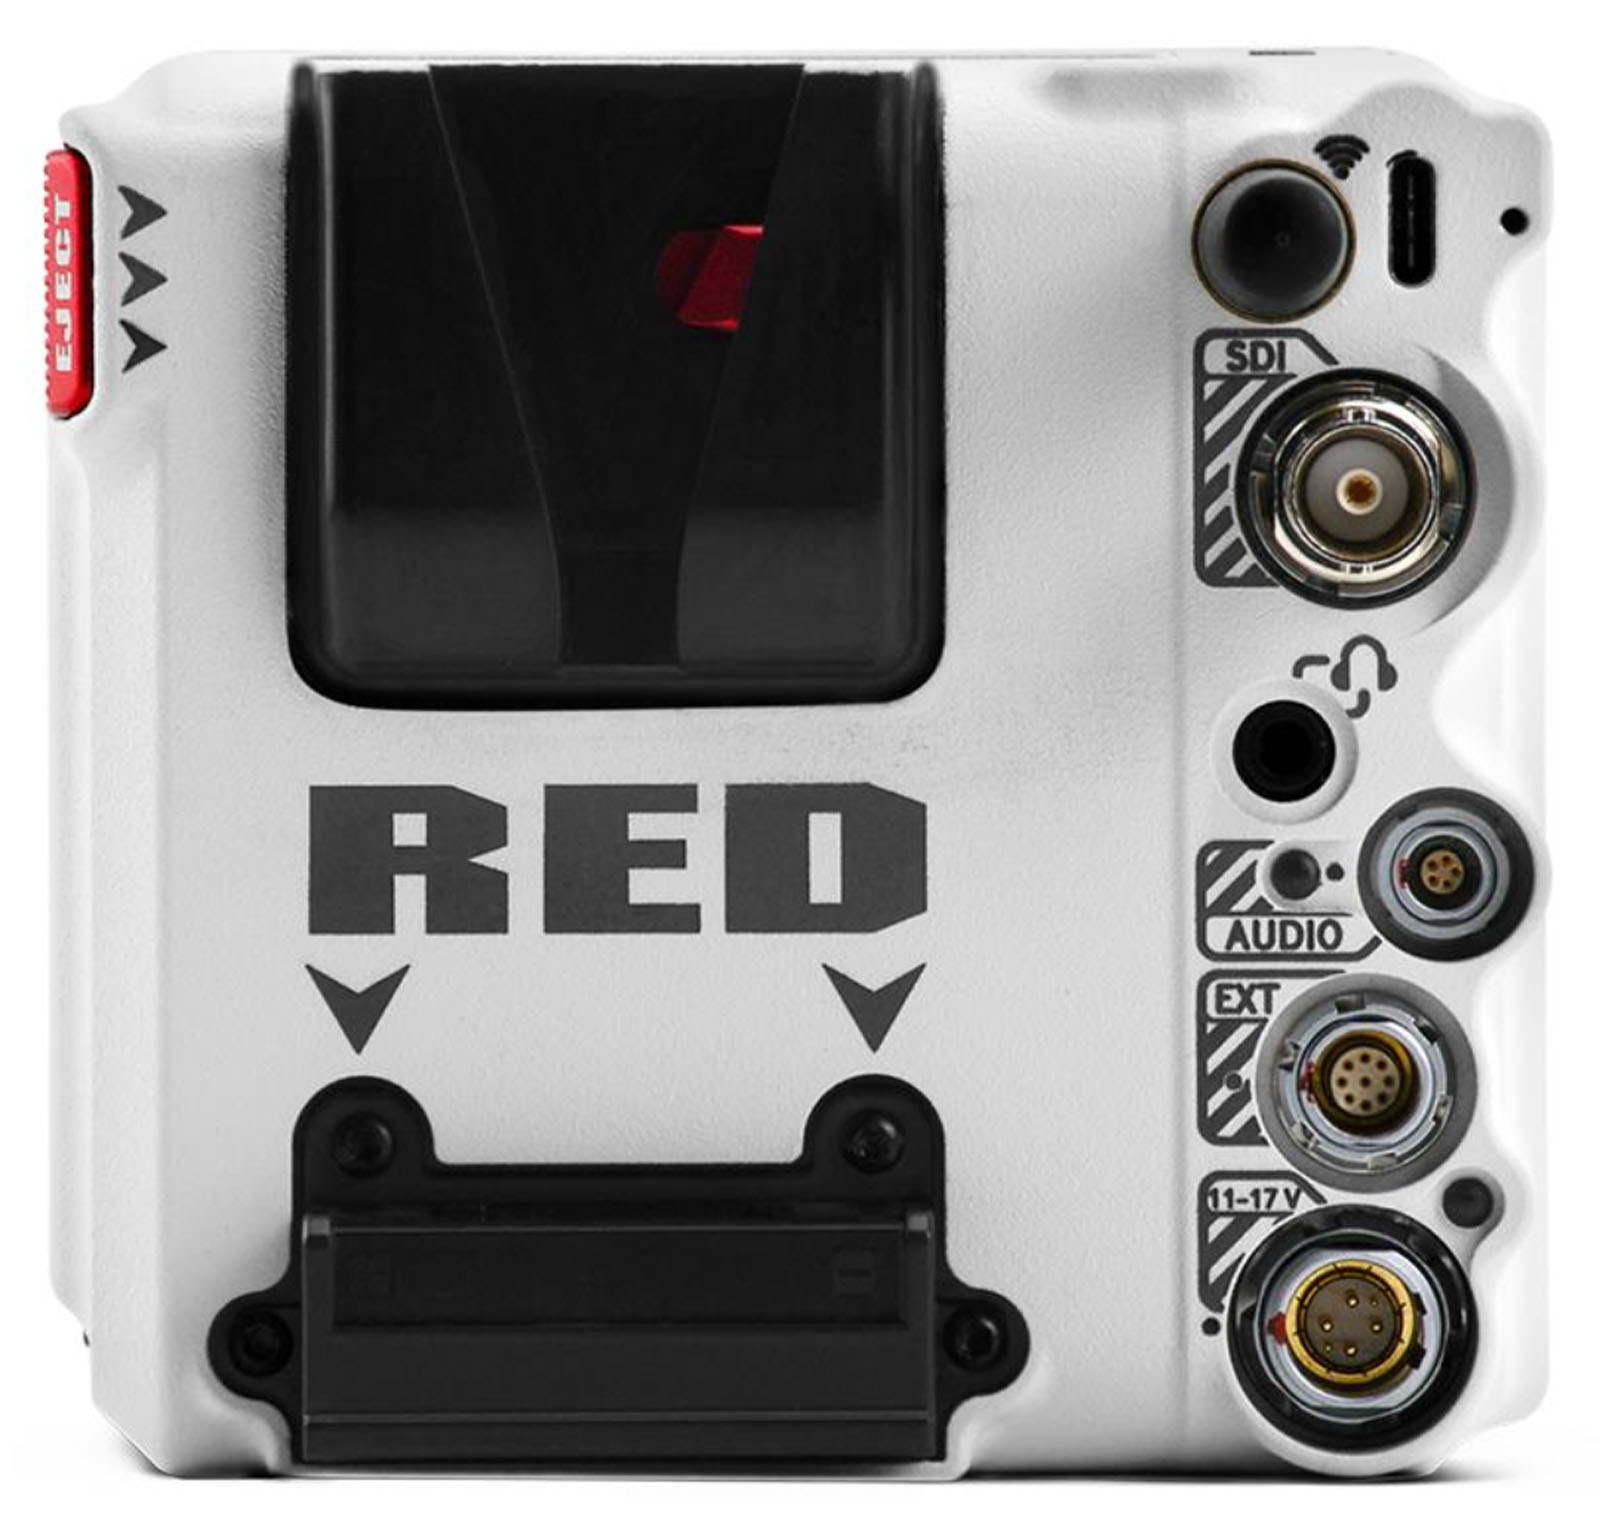 RED Komodo-X 6K Cinema Camera